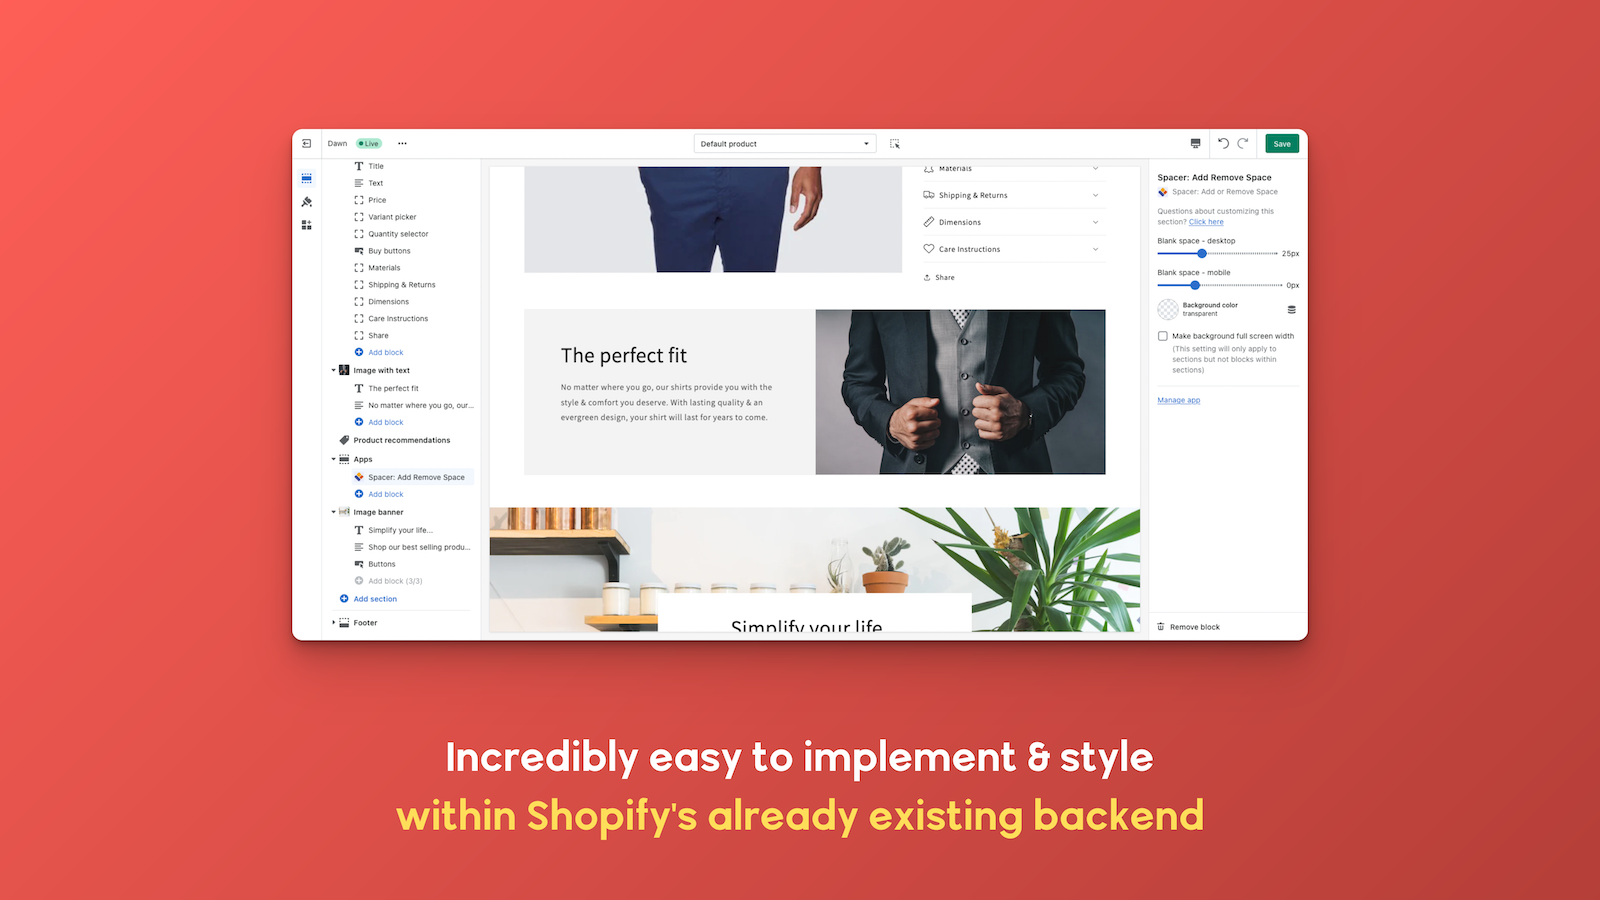 Otroligt enkelt att implementera och stilisera inom Shopify's backend